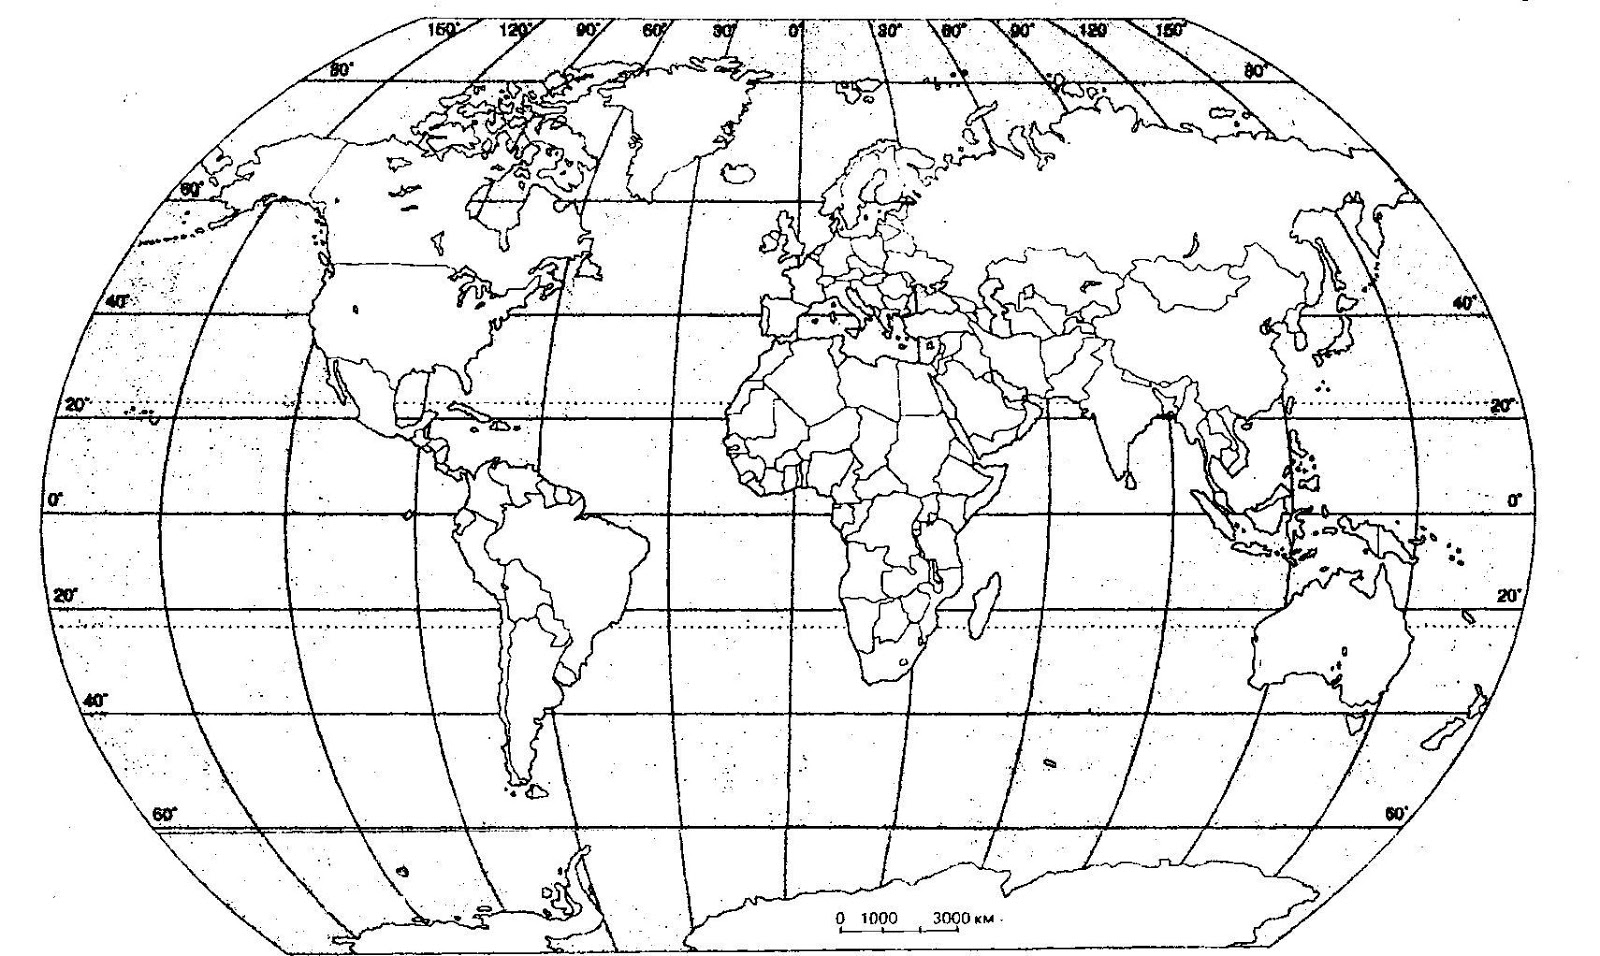 Контурная карта мира для печати а4 черно белая